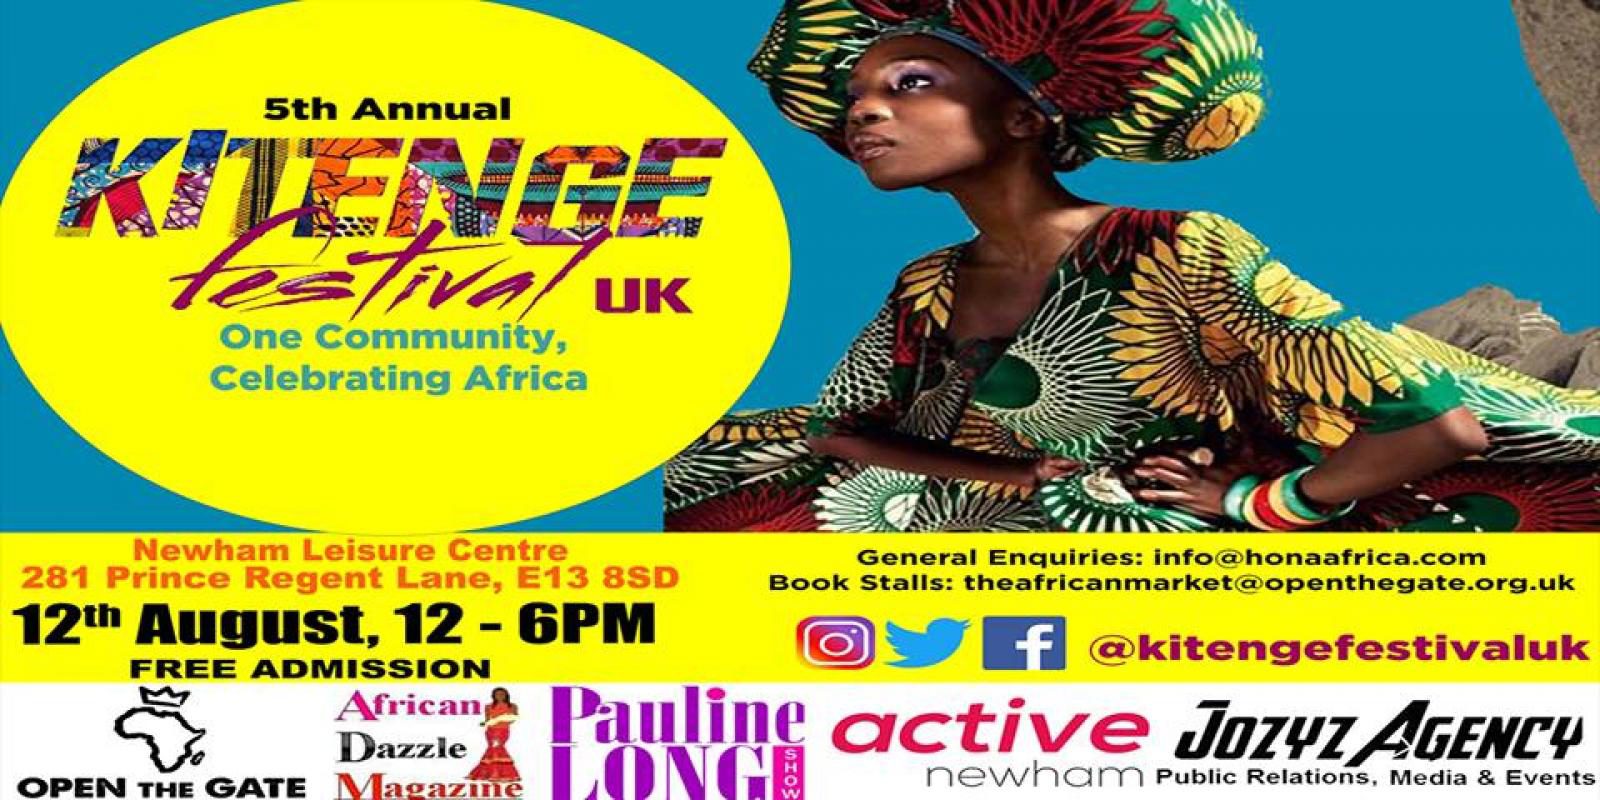 Kitenge Festival UK 2017 - Member of the volunteer team